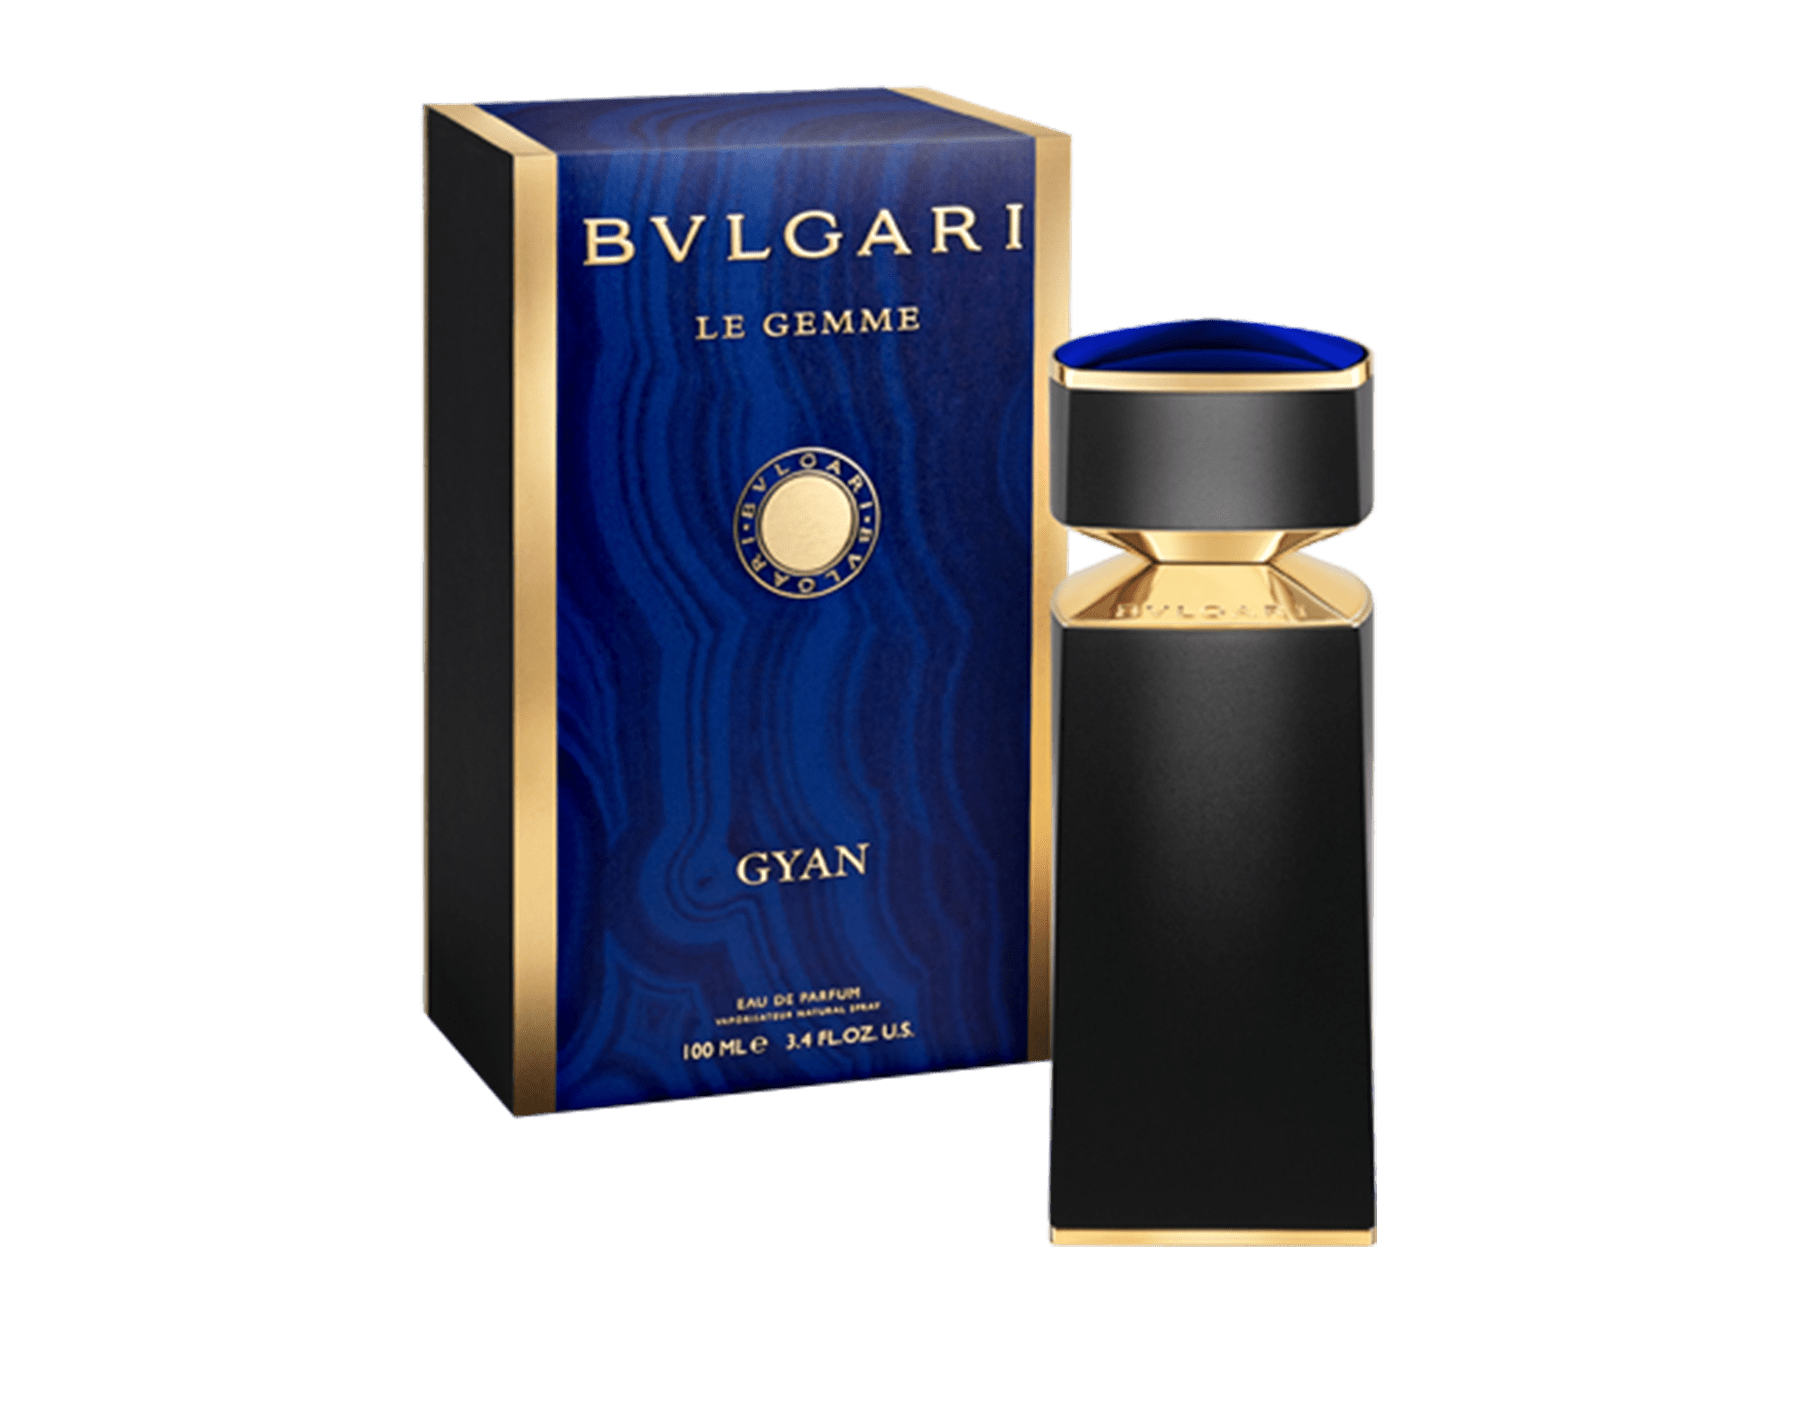 bvlgari perfume price